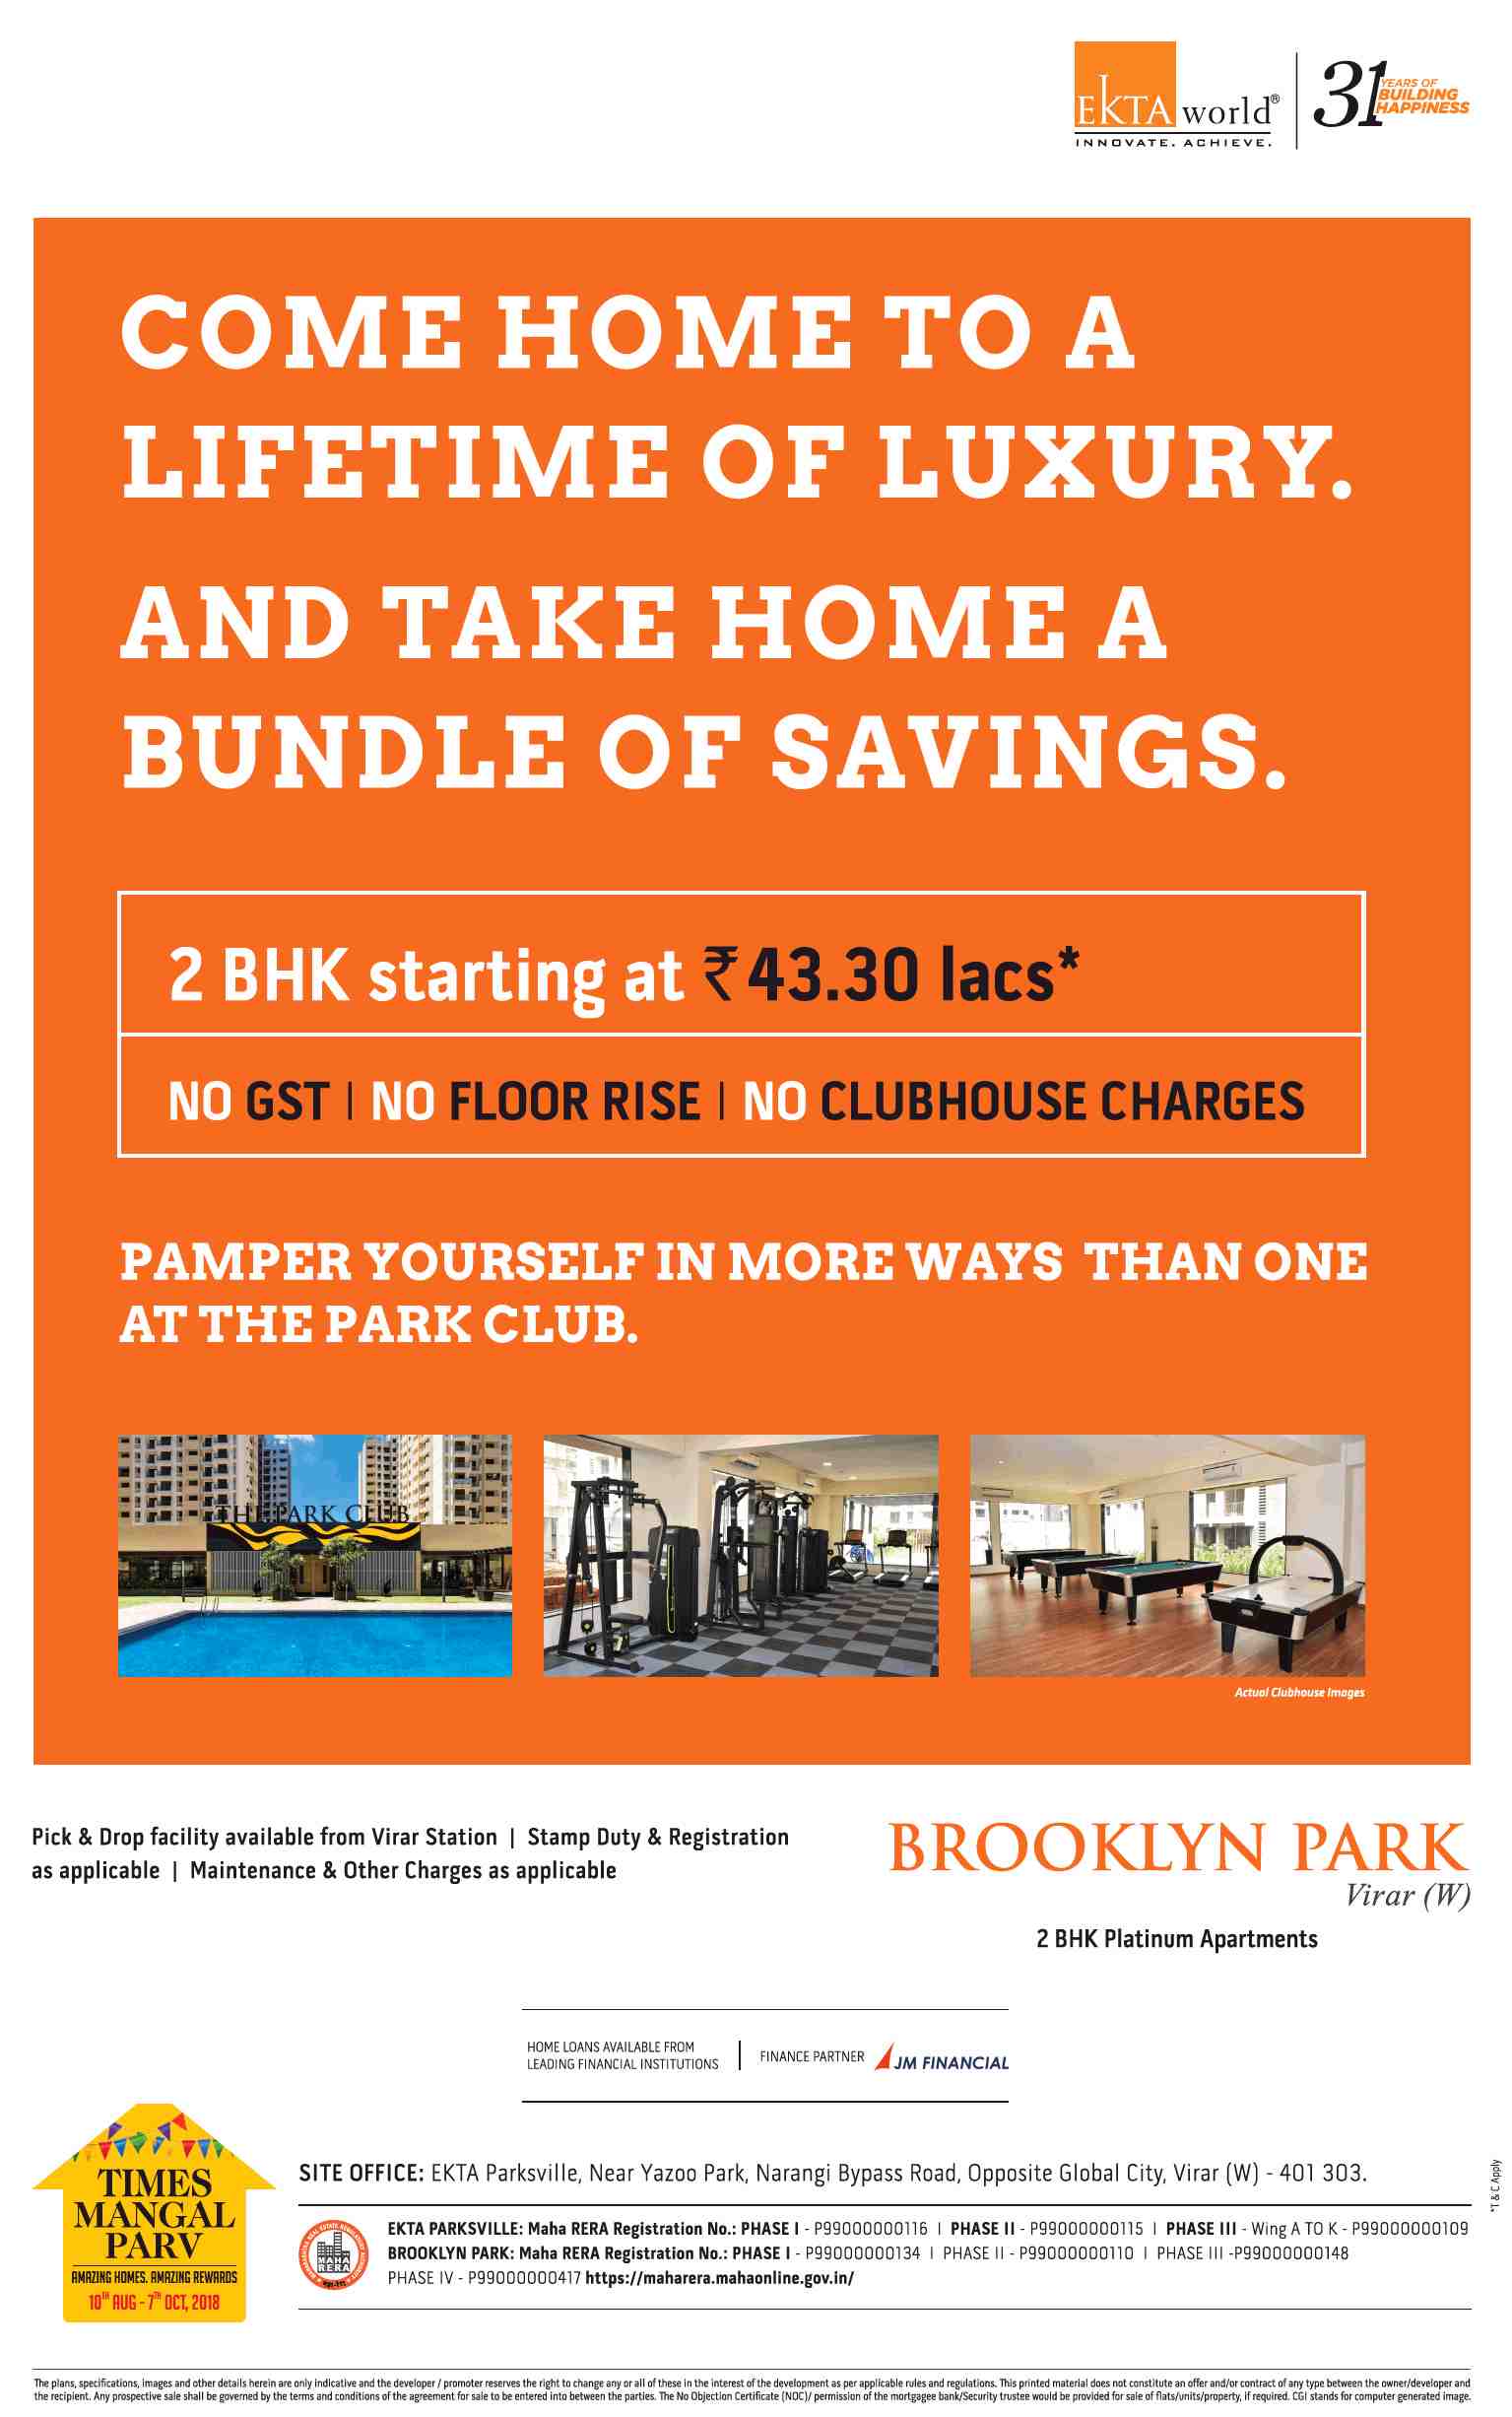 Book 2 BHK platinum apartments @ Rs. 43.30 Lacs at Ekta Brooklyn Park in Mumbai